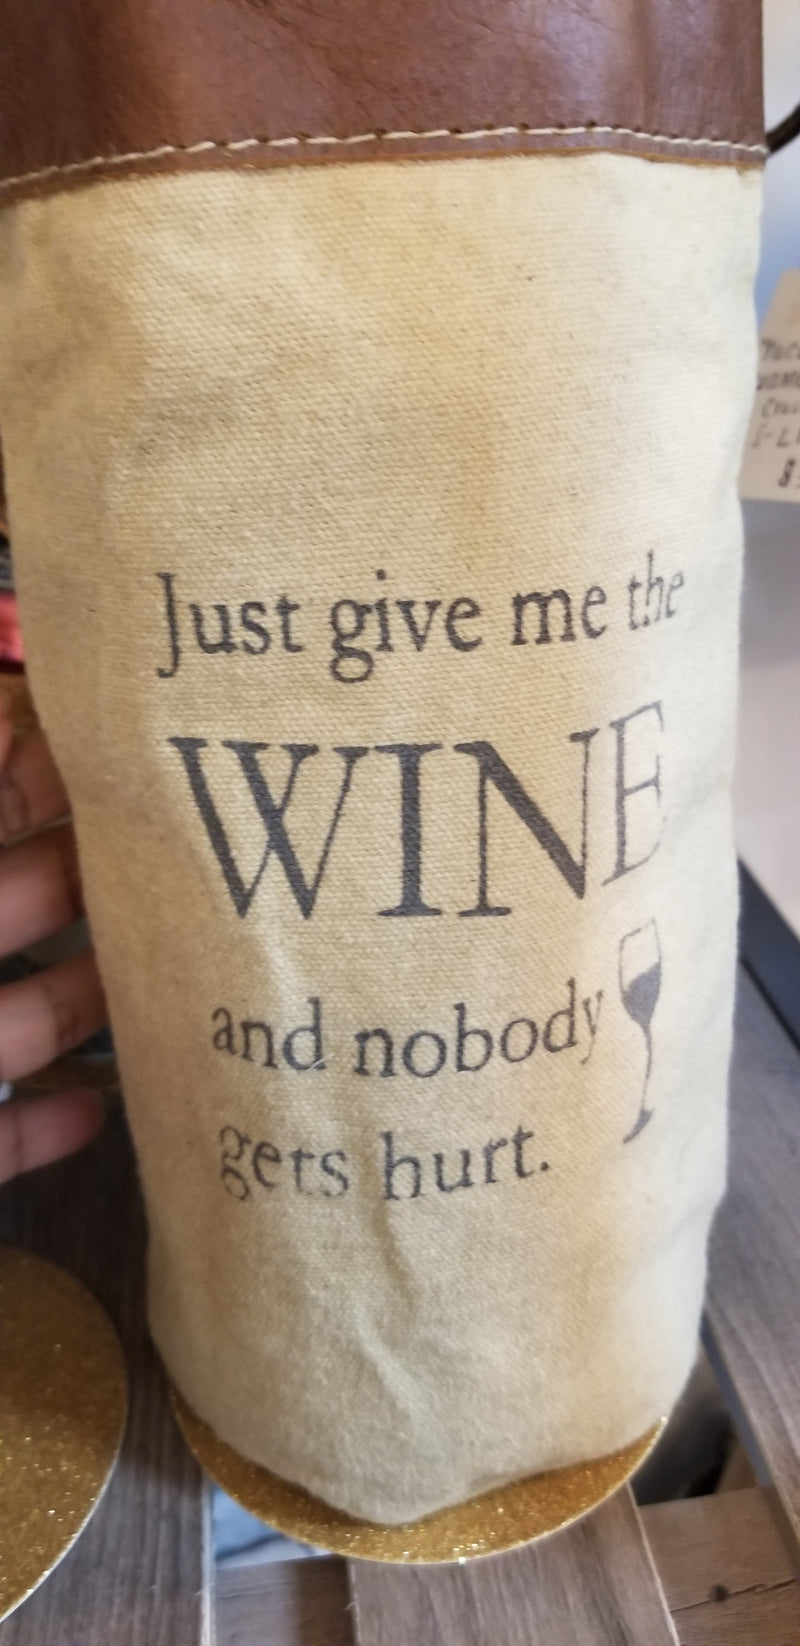 "Just give me" Bottle Bag